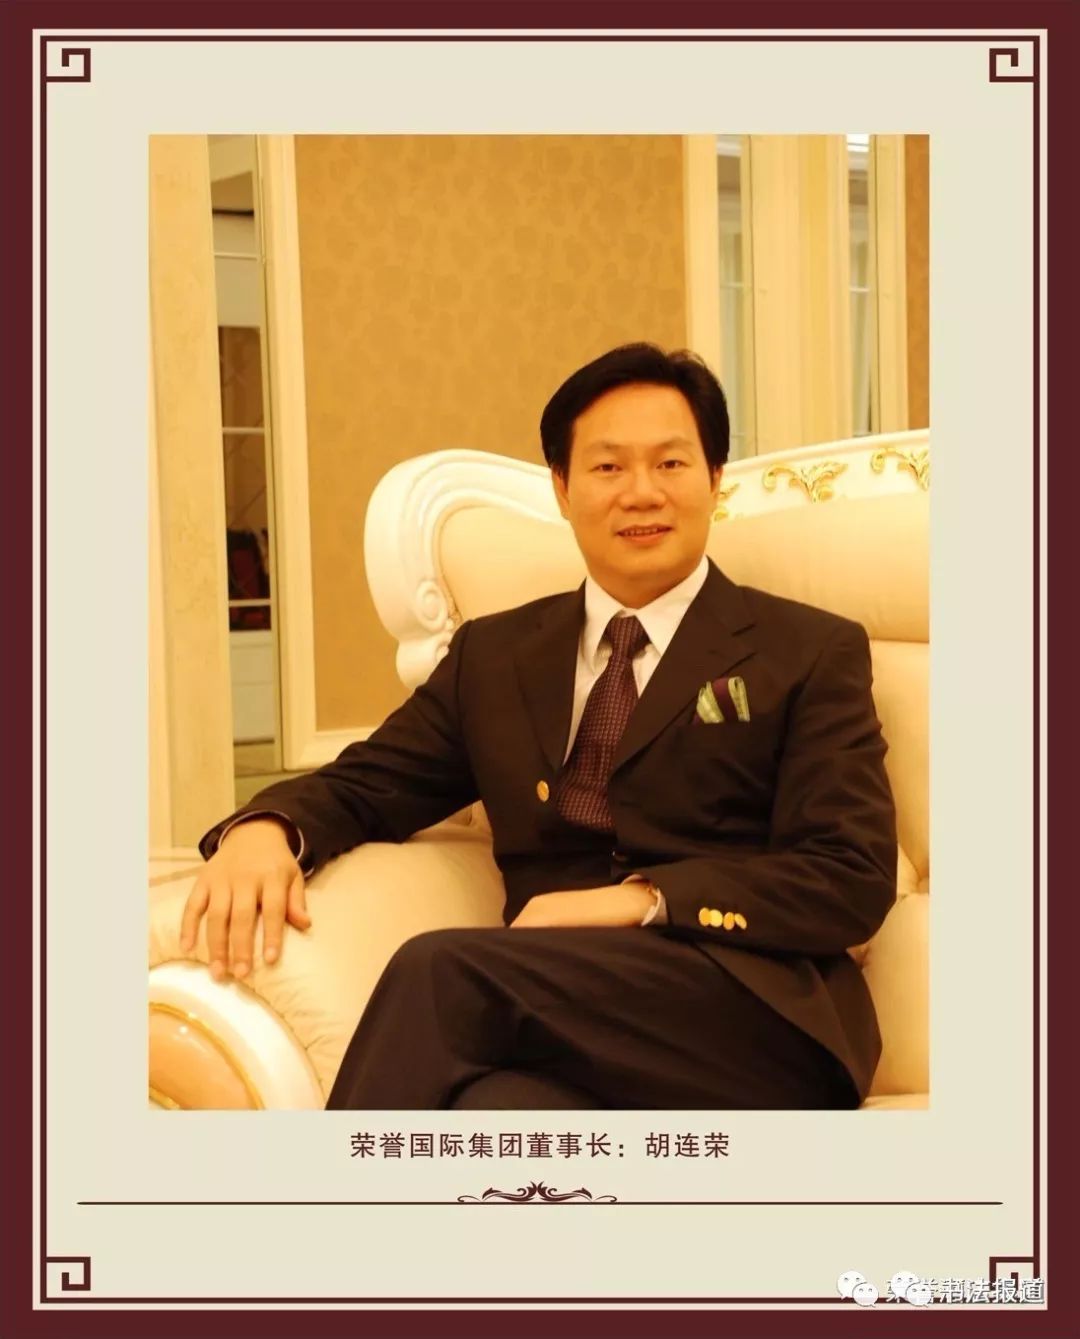 关注丨荣誉国际集团董事长胡连荣 被聘为江西省人民政府研究室特约